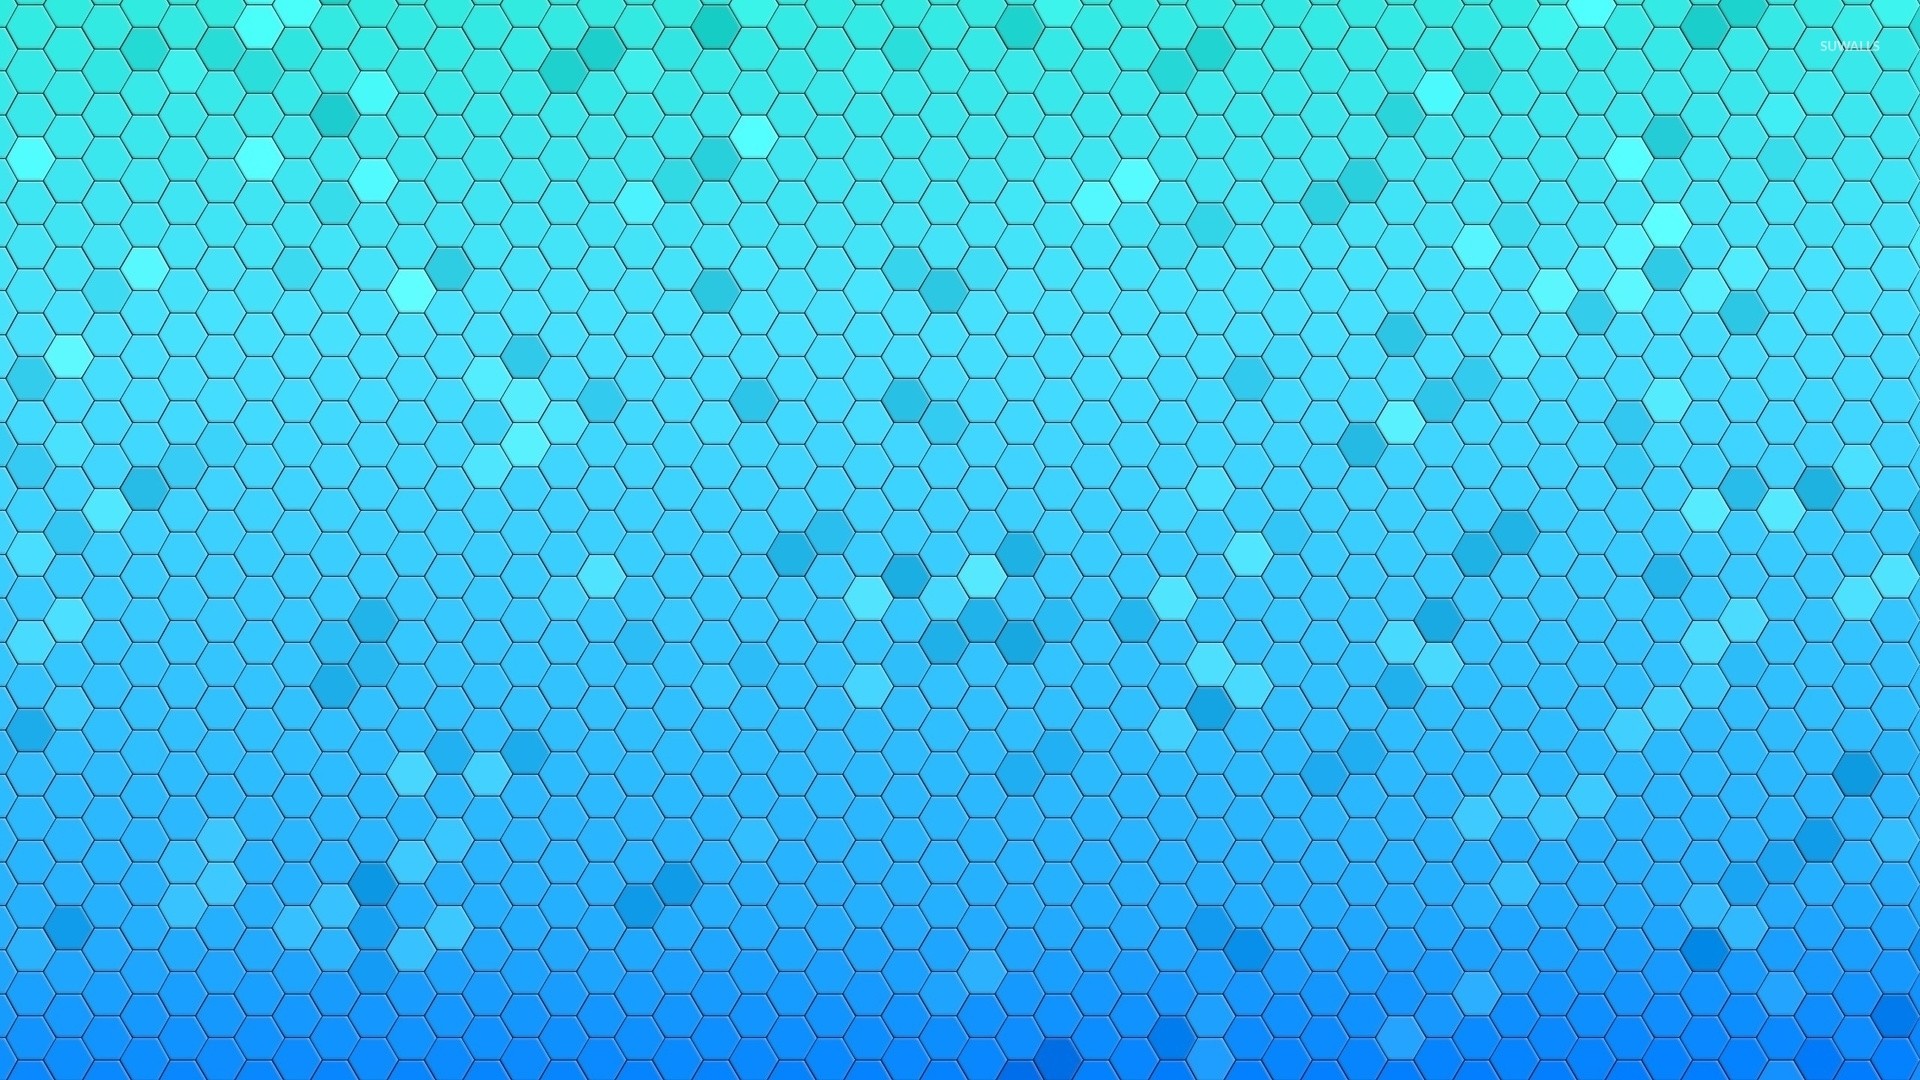 1920x1080, Blue Honeycomb Pattern Wallpaper 
 Data - Light Blue Carbon Fiber , HD Wallpaper & Backgrounds